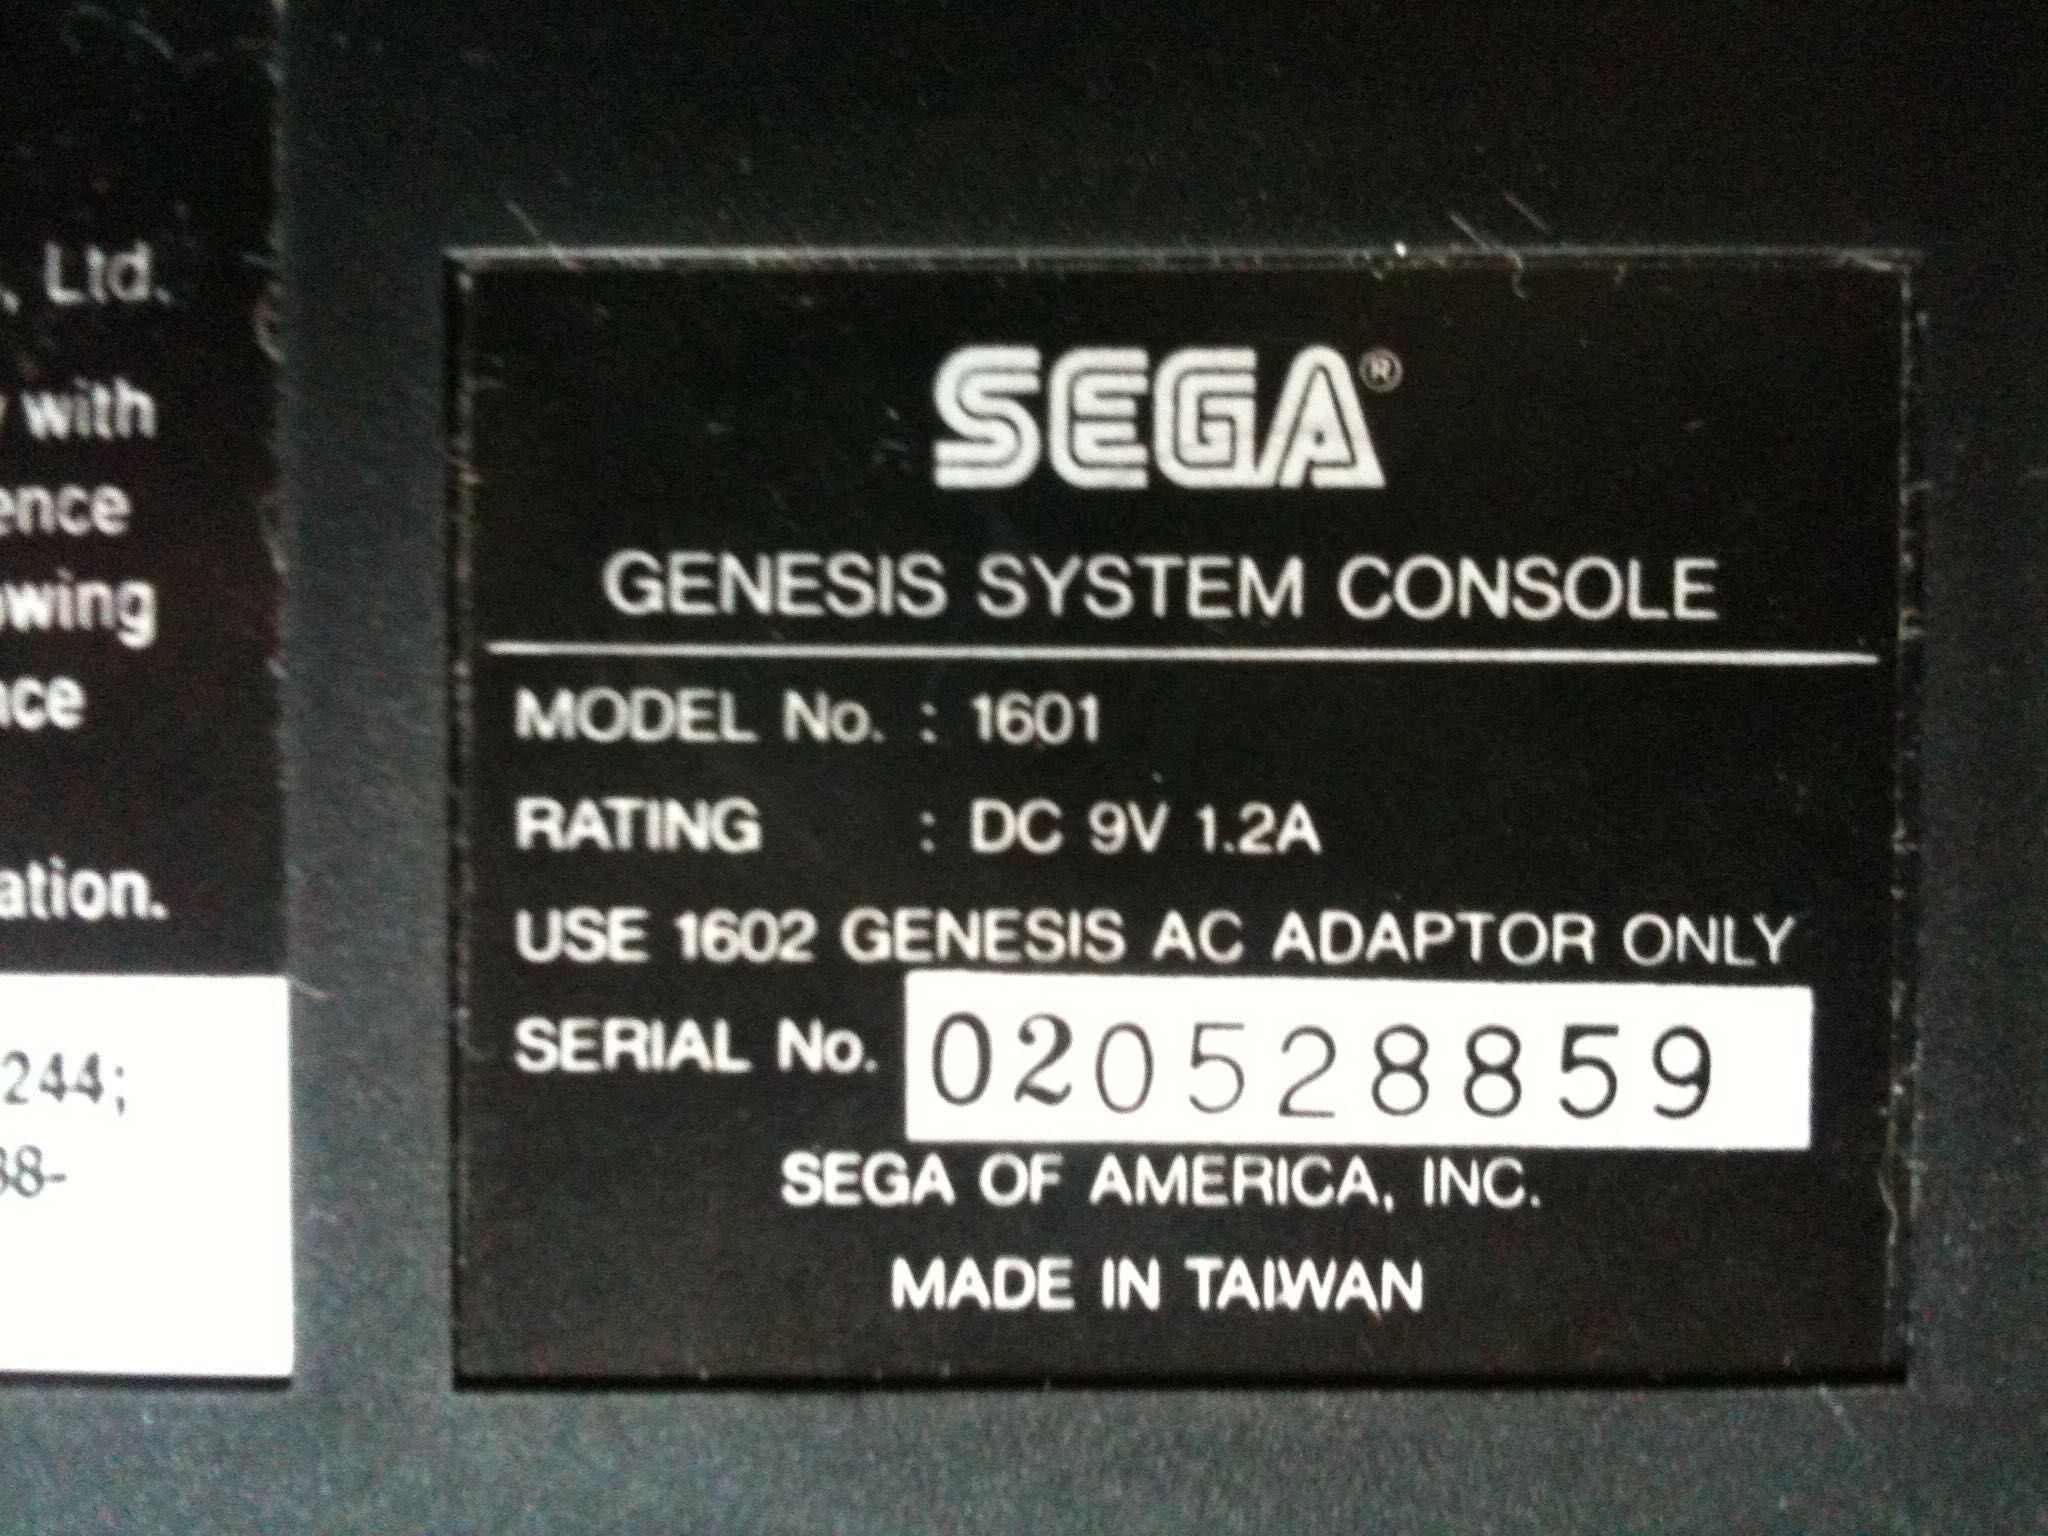 Приставка Sega Genesis (NTSC) с двумя джойстиками, RGB SCART